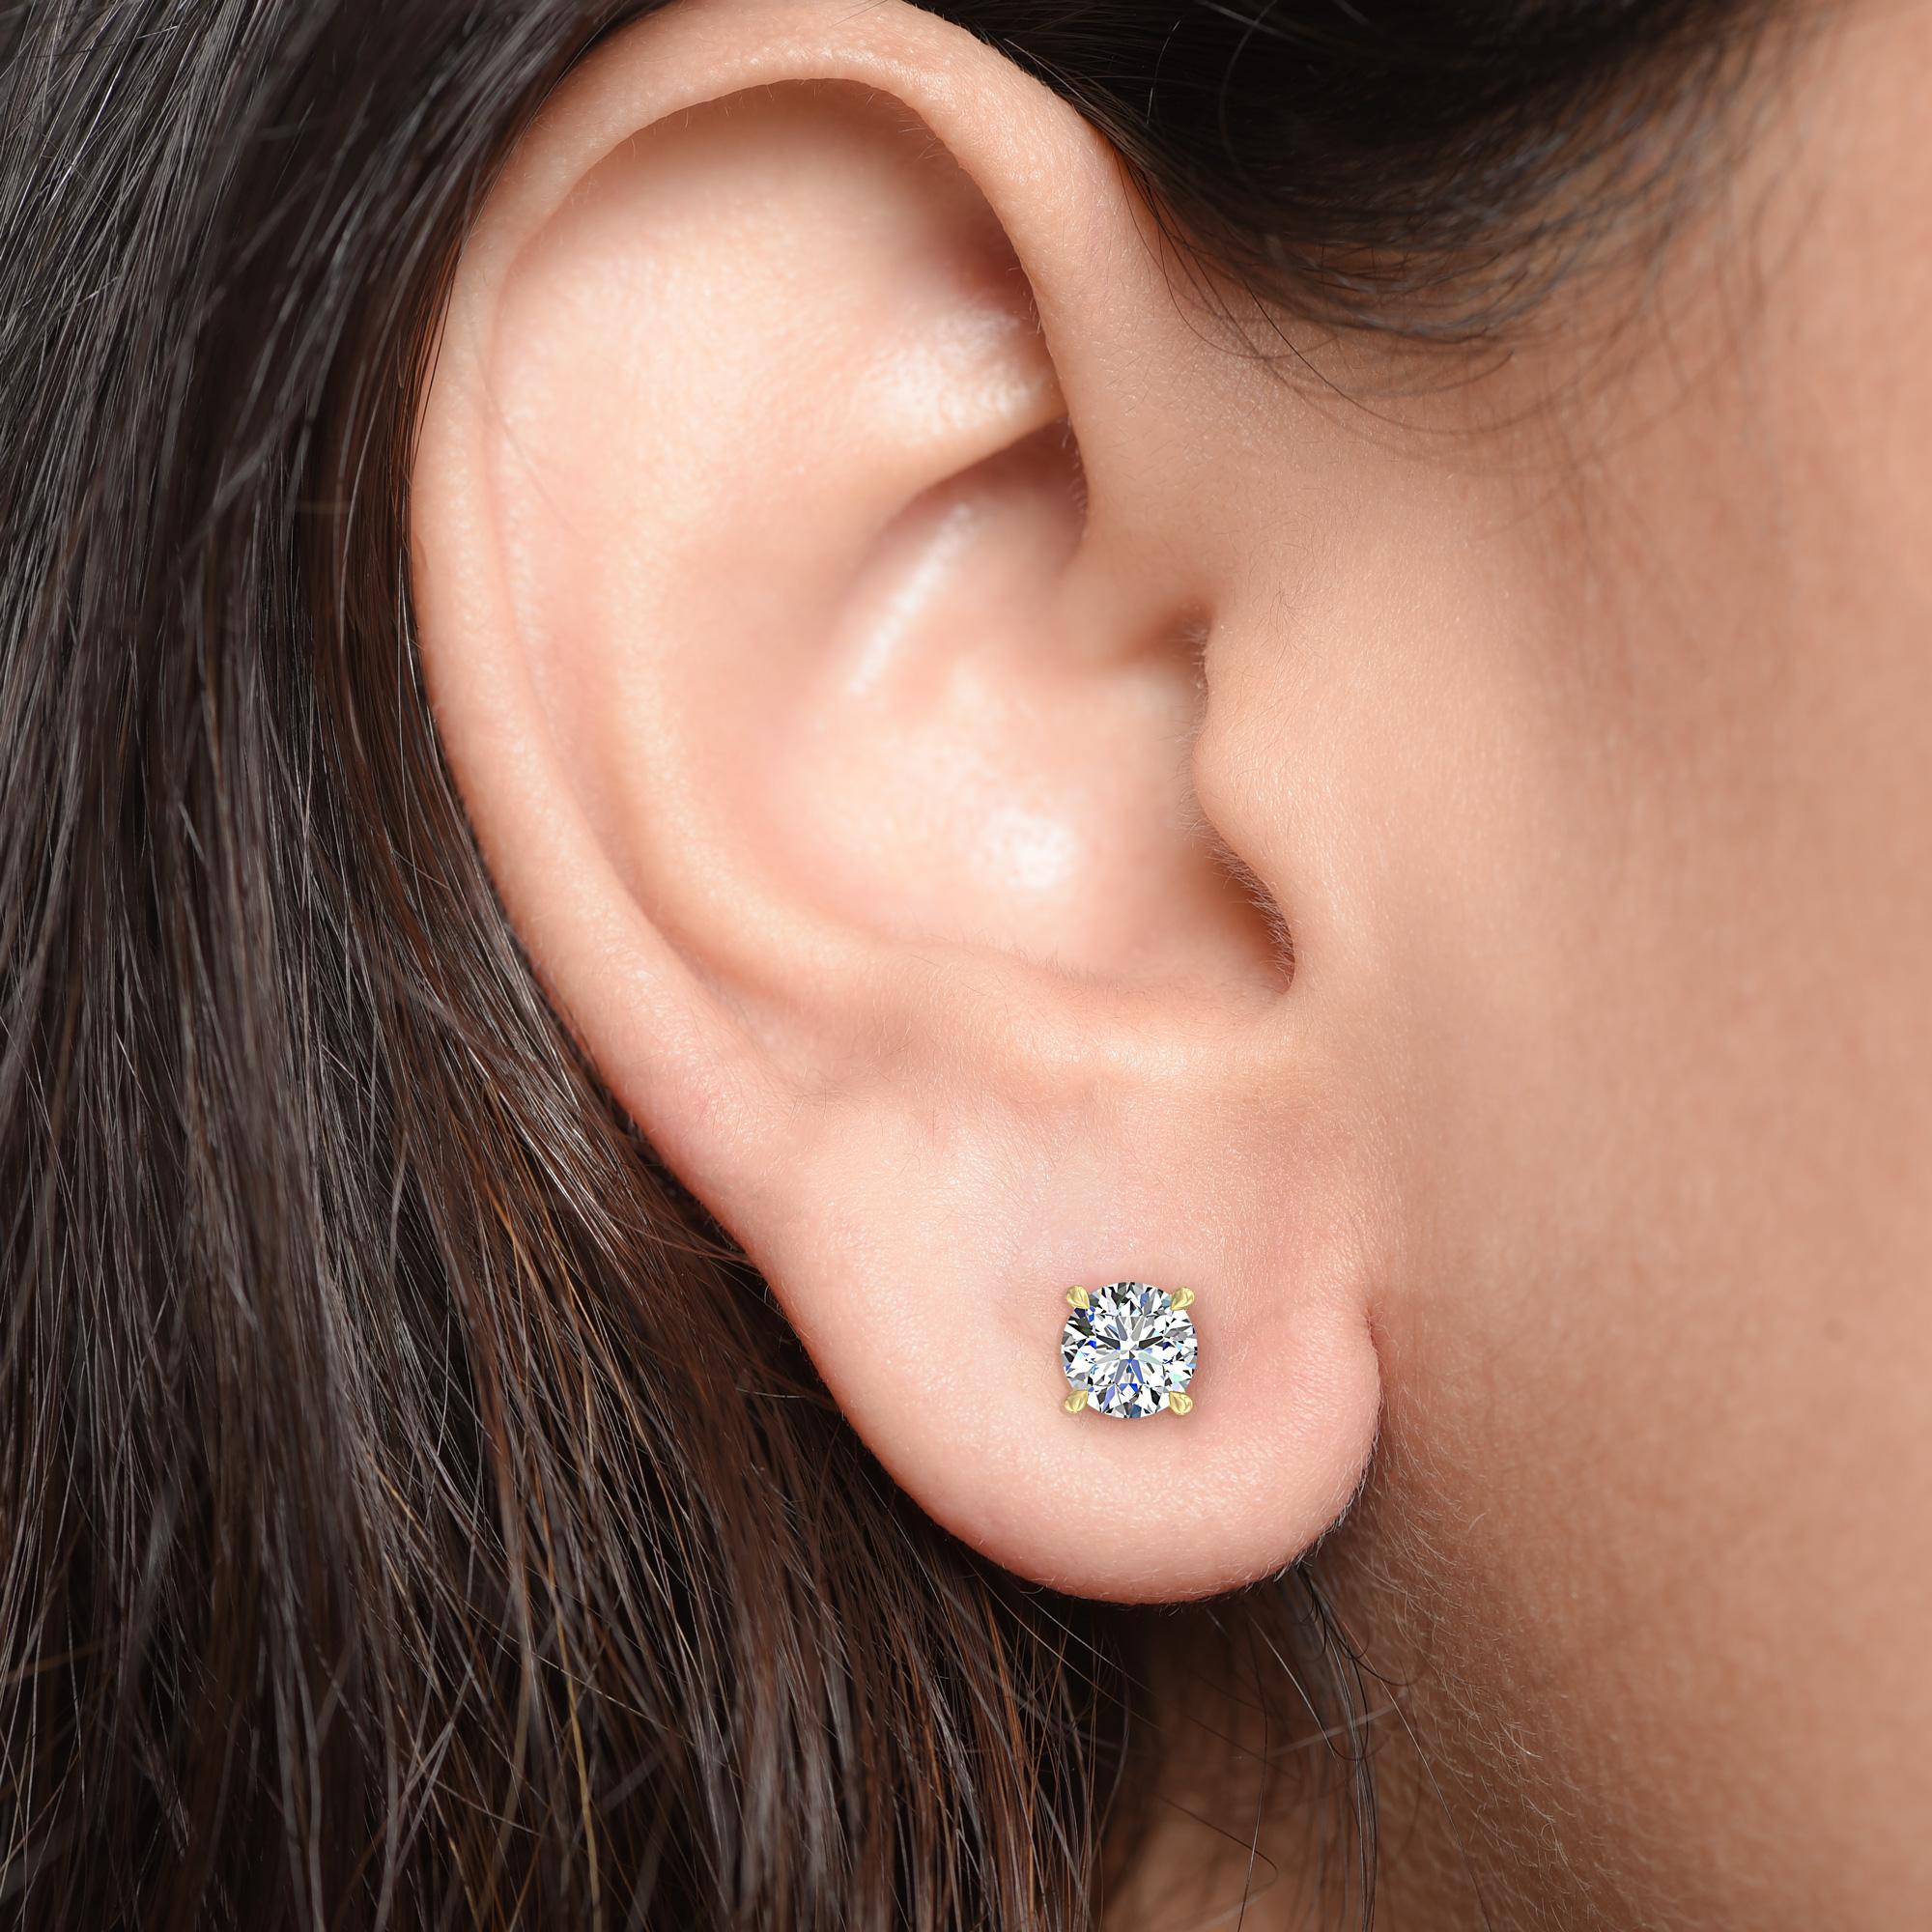 Diese klassischen, GIA-zertifizierten Diamantohrstecker präsentieren ein Paar Diamanten mit einem Gesamtgewicht von 0,80 Karat. Die aus 18-karätigem Gelbgold gefertigten vierzackigen Ohrringe sind auch in Weiß- und Roségold erhältlich.

Perfekt zum